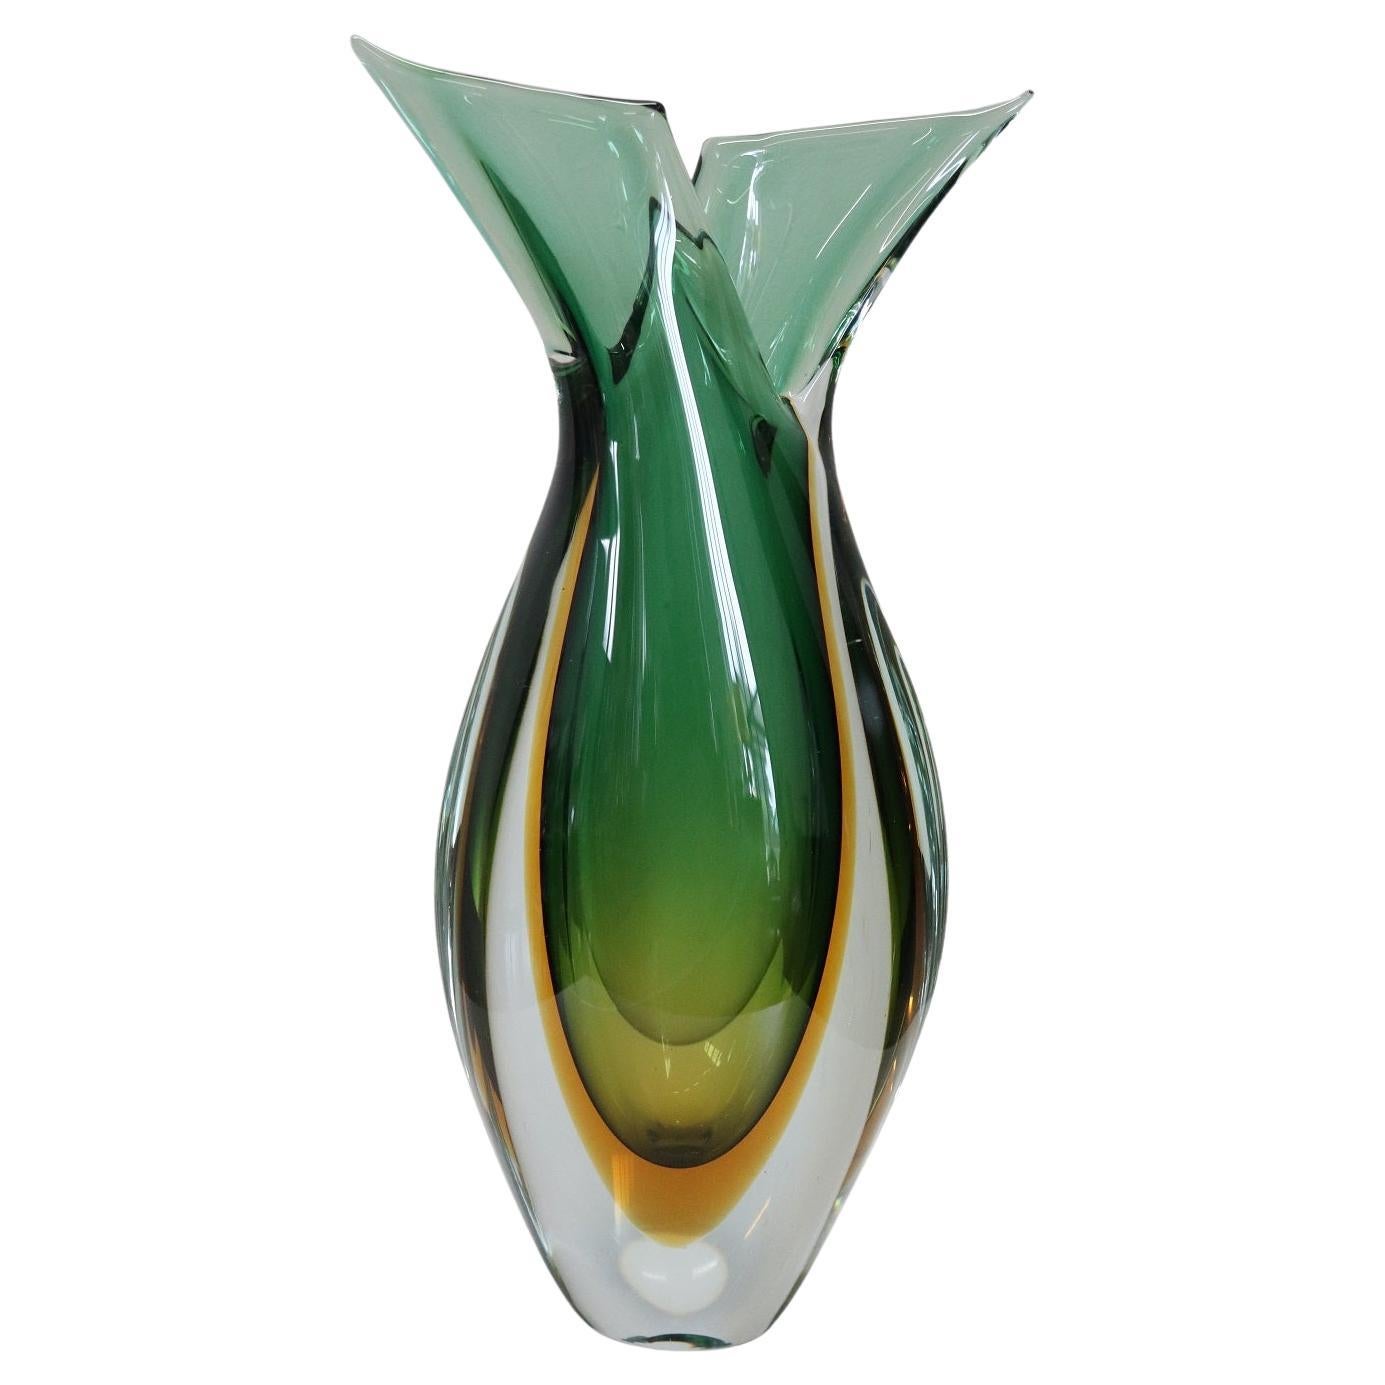 20th Century Italian Murano Artistic Glass Vase by Flavio Poli for Seguso, 1960s